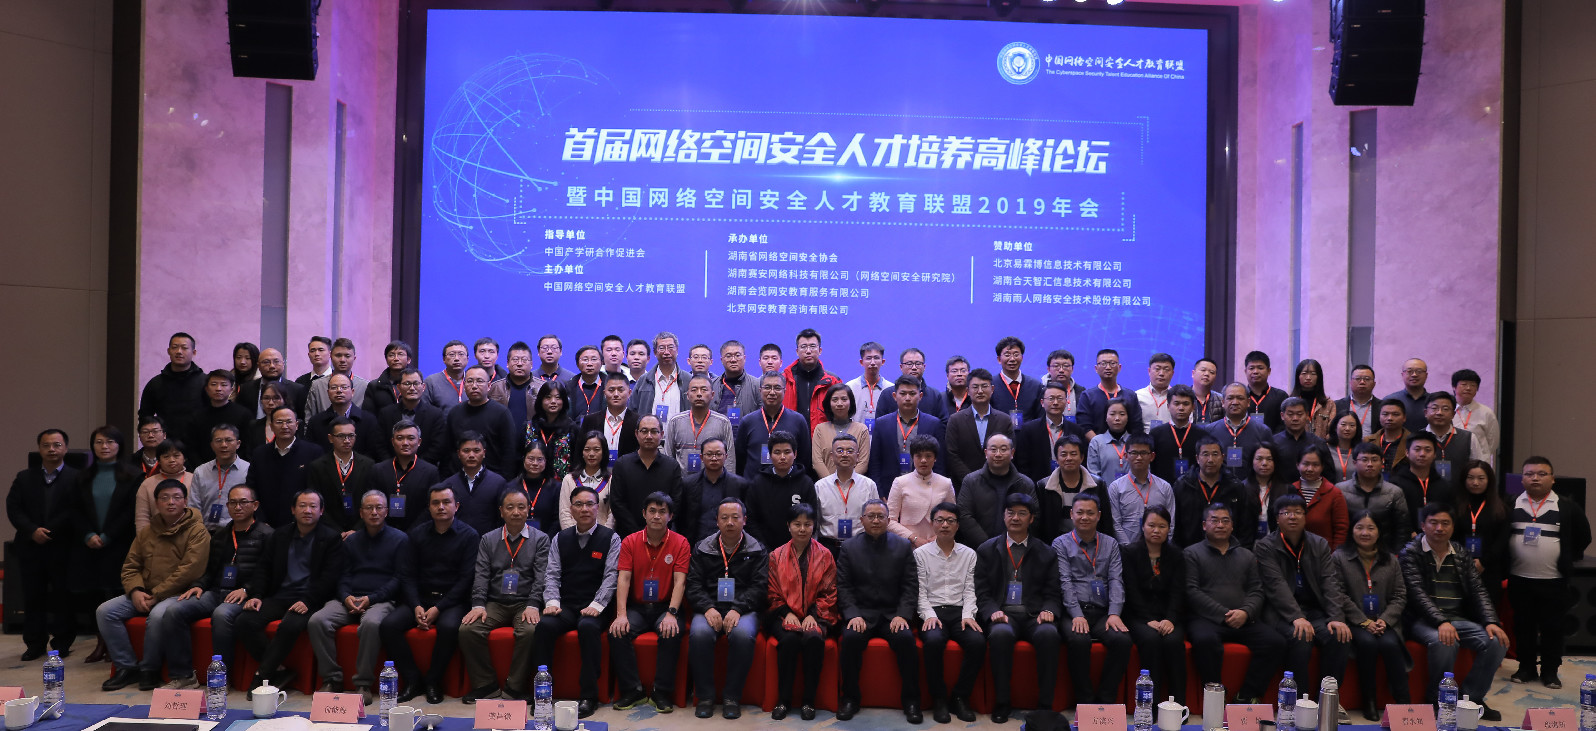 重磅发布 | 中国网络空间安全人才教育联盟2019年会-合天智汇四大亮点受关注-第1张图片-网盾网络安全培训